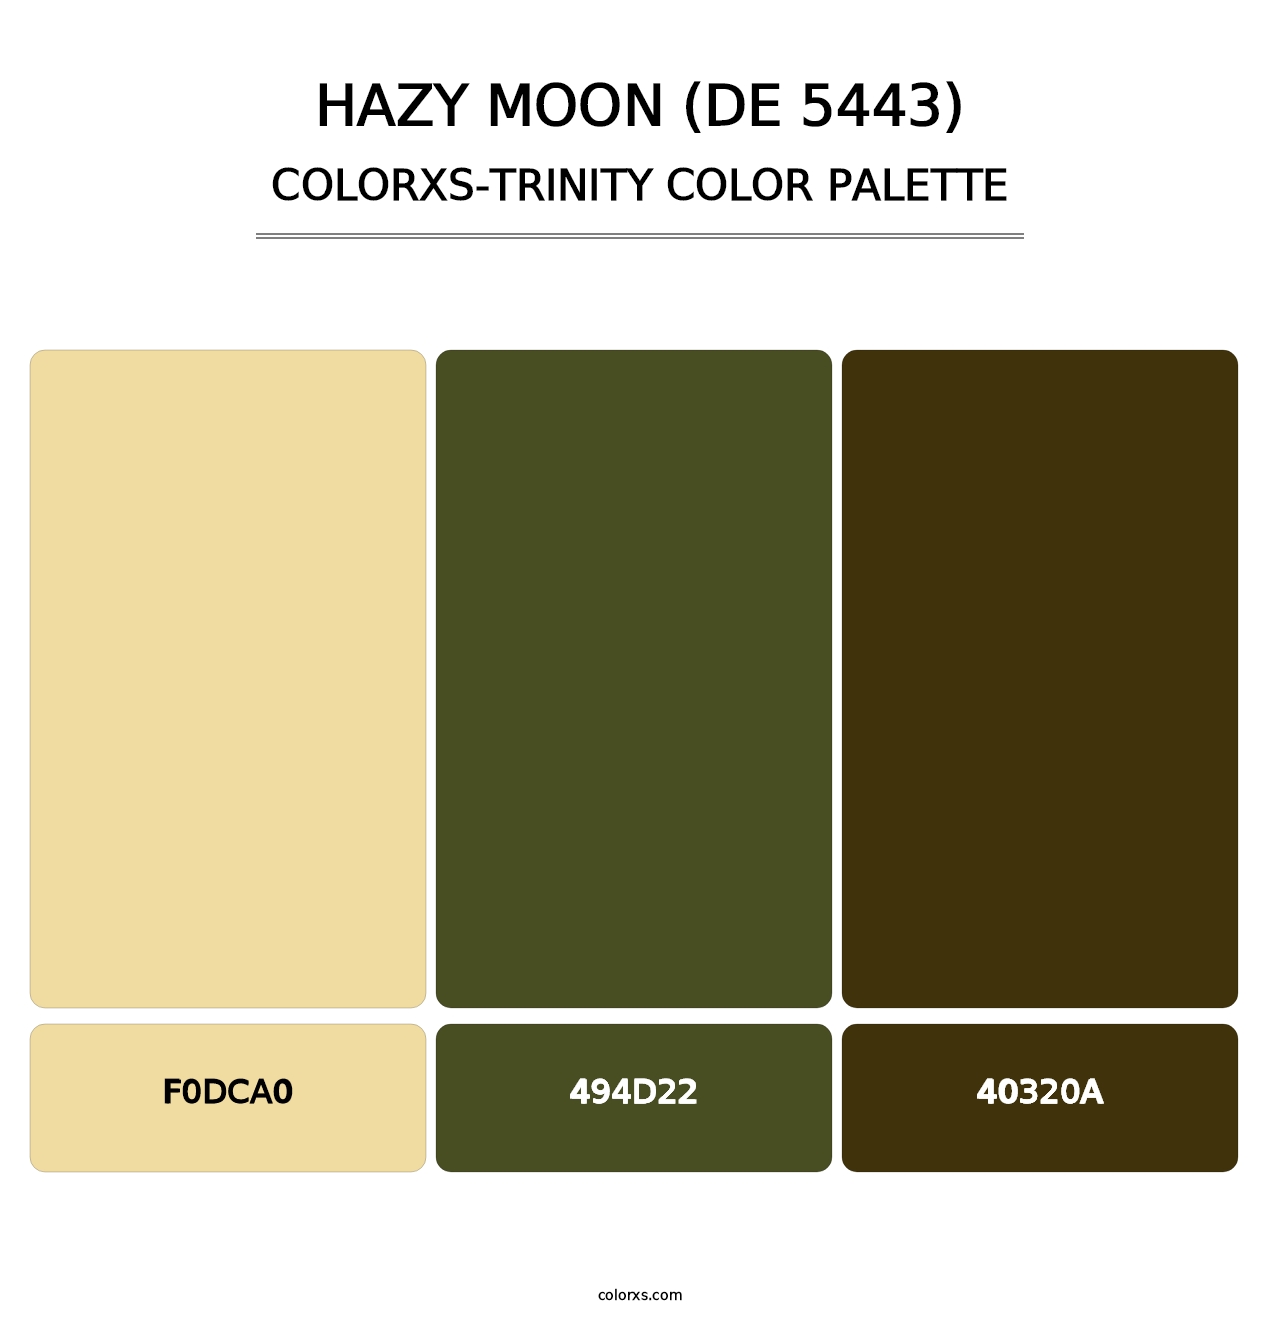 Hazy Moon (DE 5443) - Colorxs Trinity Palette